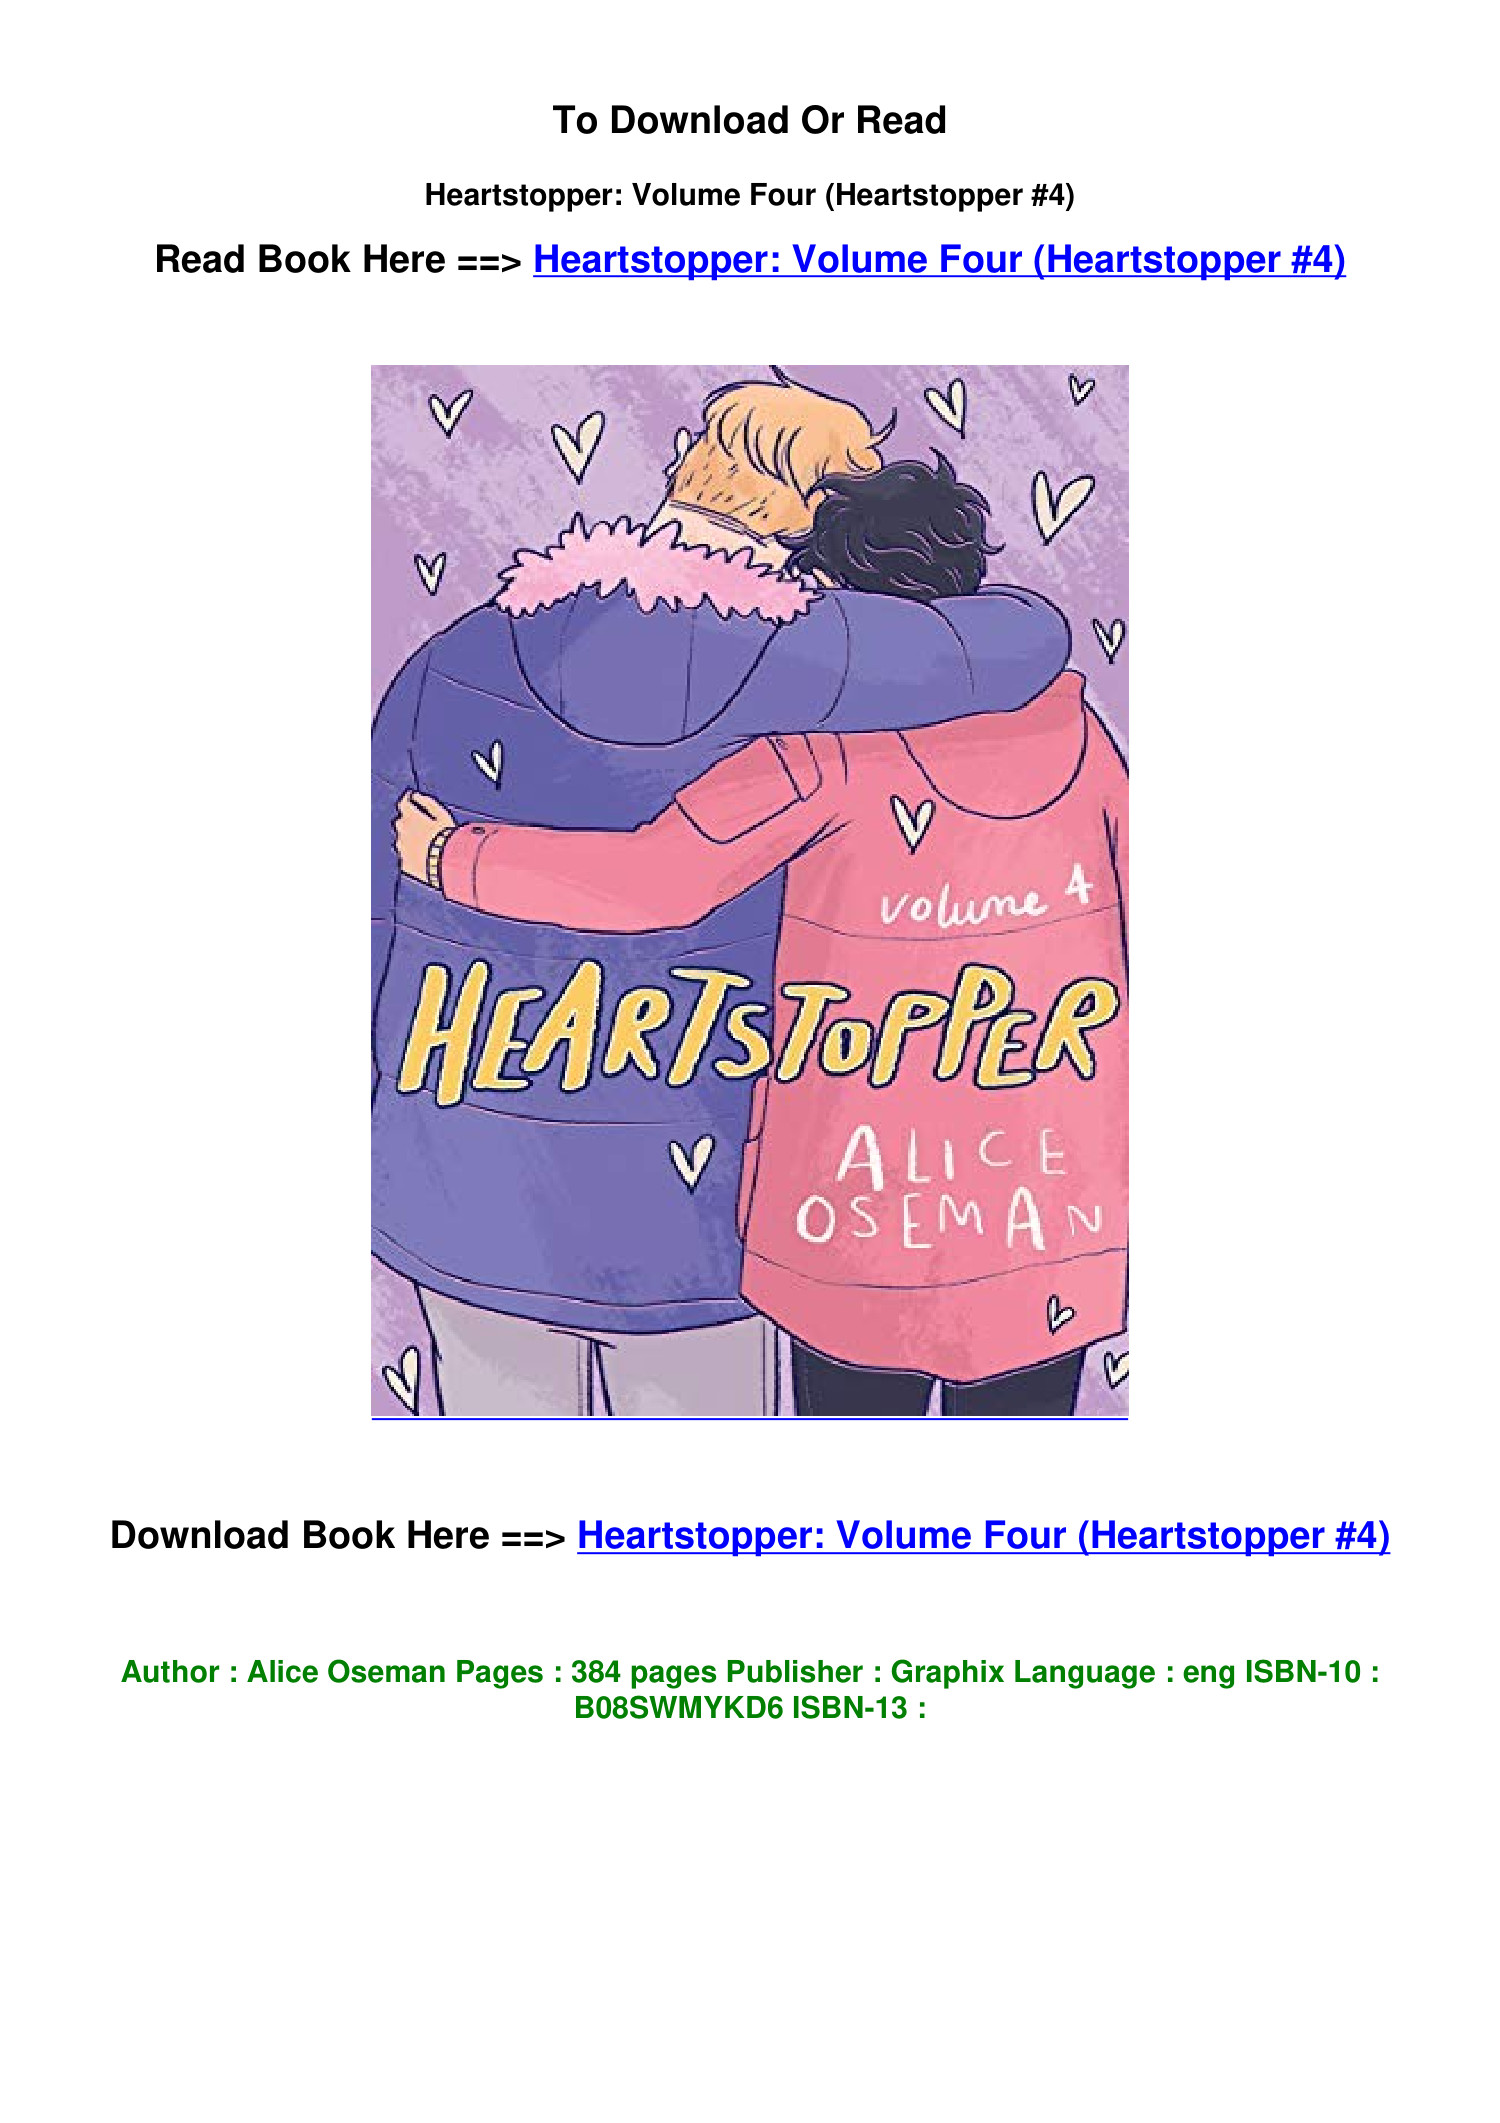 Heartstopper: Volume Four (Heartstopper, #4) by Alice Oseman